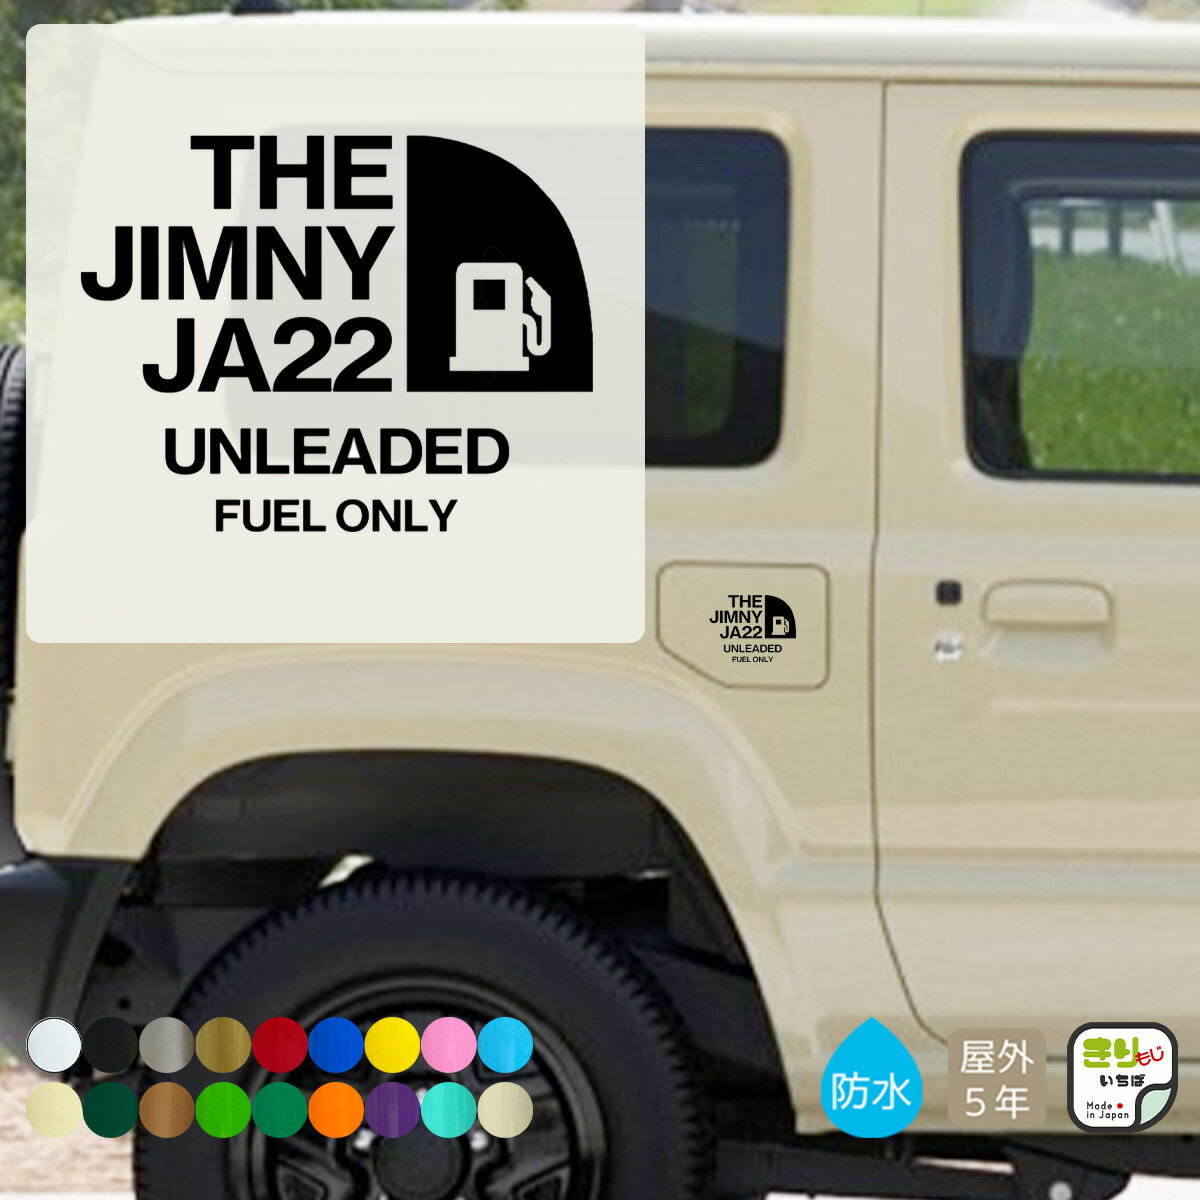 ジムニー 給油口 ステッカー 車 おしゃれ THE JIMNY JA22 給油 カッティングステッカー 切り文字 防水 シール じむにー jimny FUEL fuel フューエル カバー gas ガス ガソリン カスタム パーツ 車用 きりもじいちば